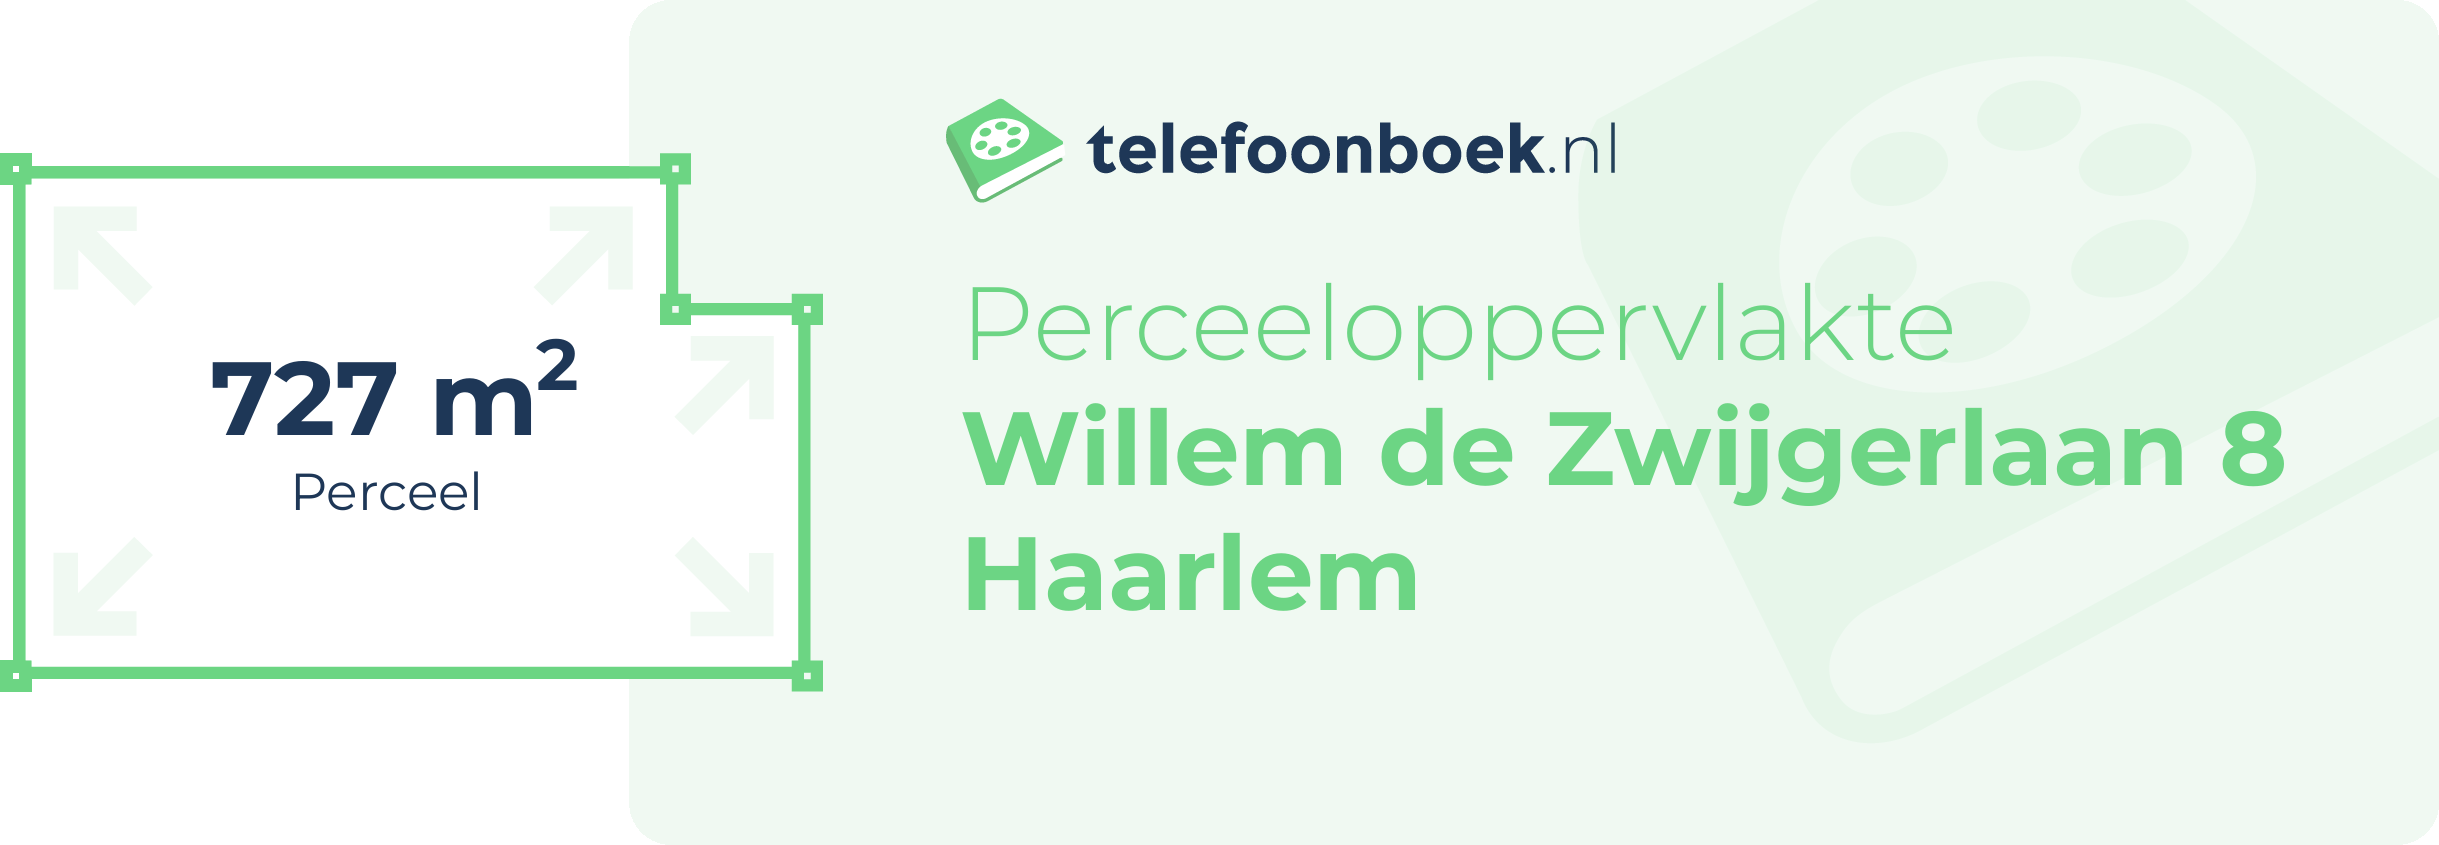 Perceeloppervlakte Willem De Zwijgerlaan 8 Haarlem